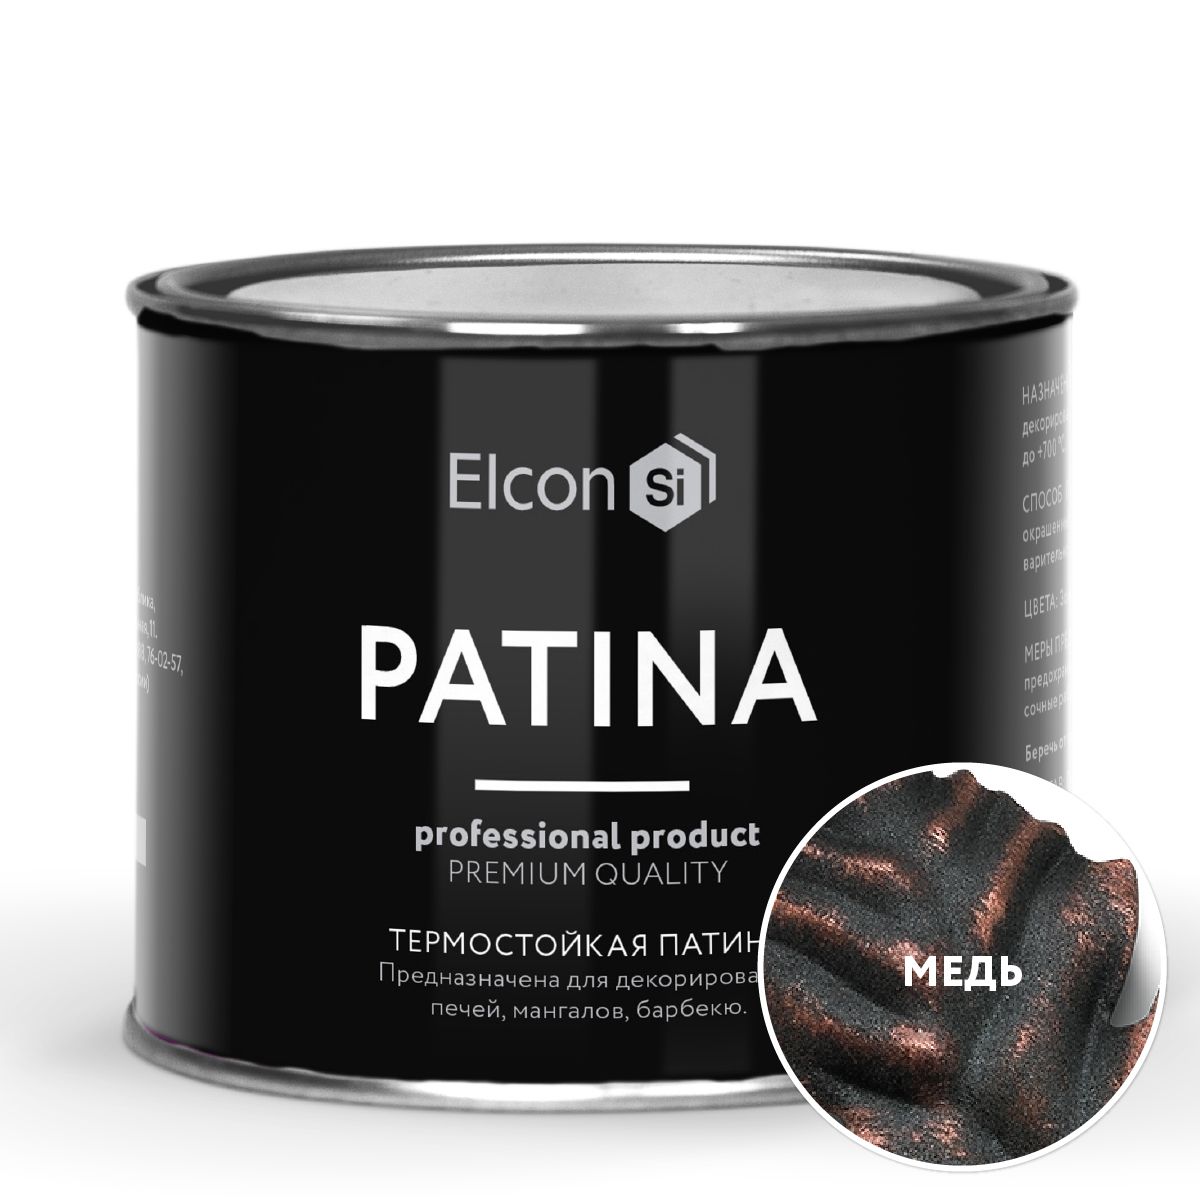 Термостойкая патина Elcon Patina + 700 градусов Медь 0,2 кг патина elcon patina термостойкая до 700 градусов золото 200 г